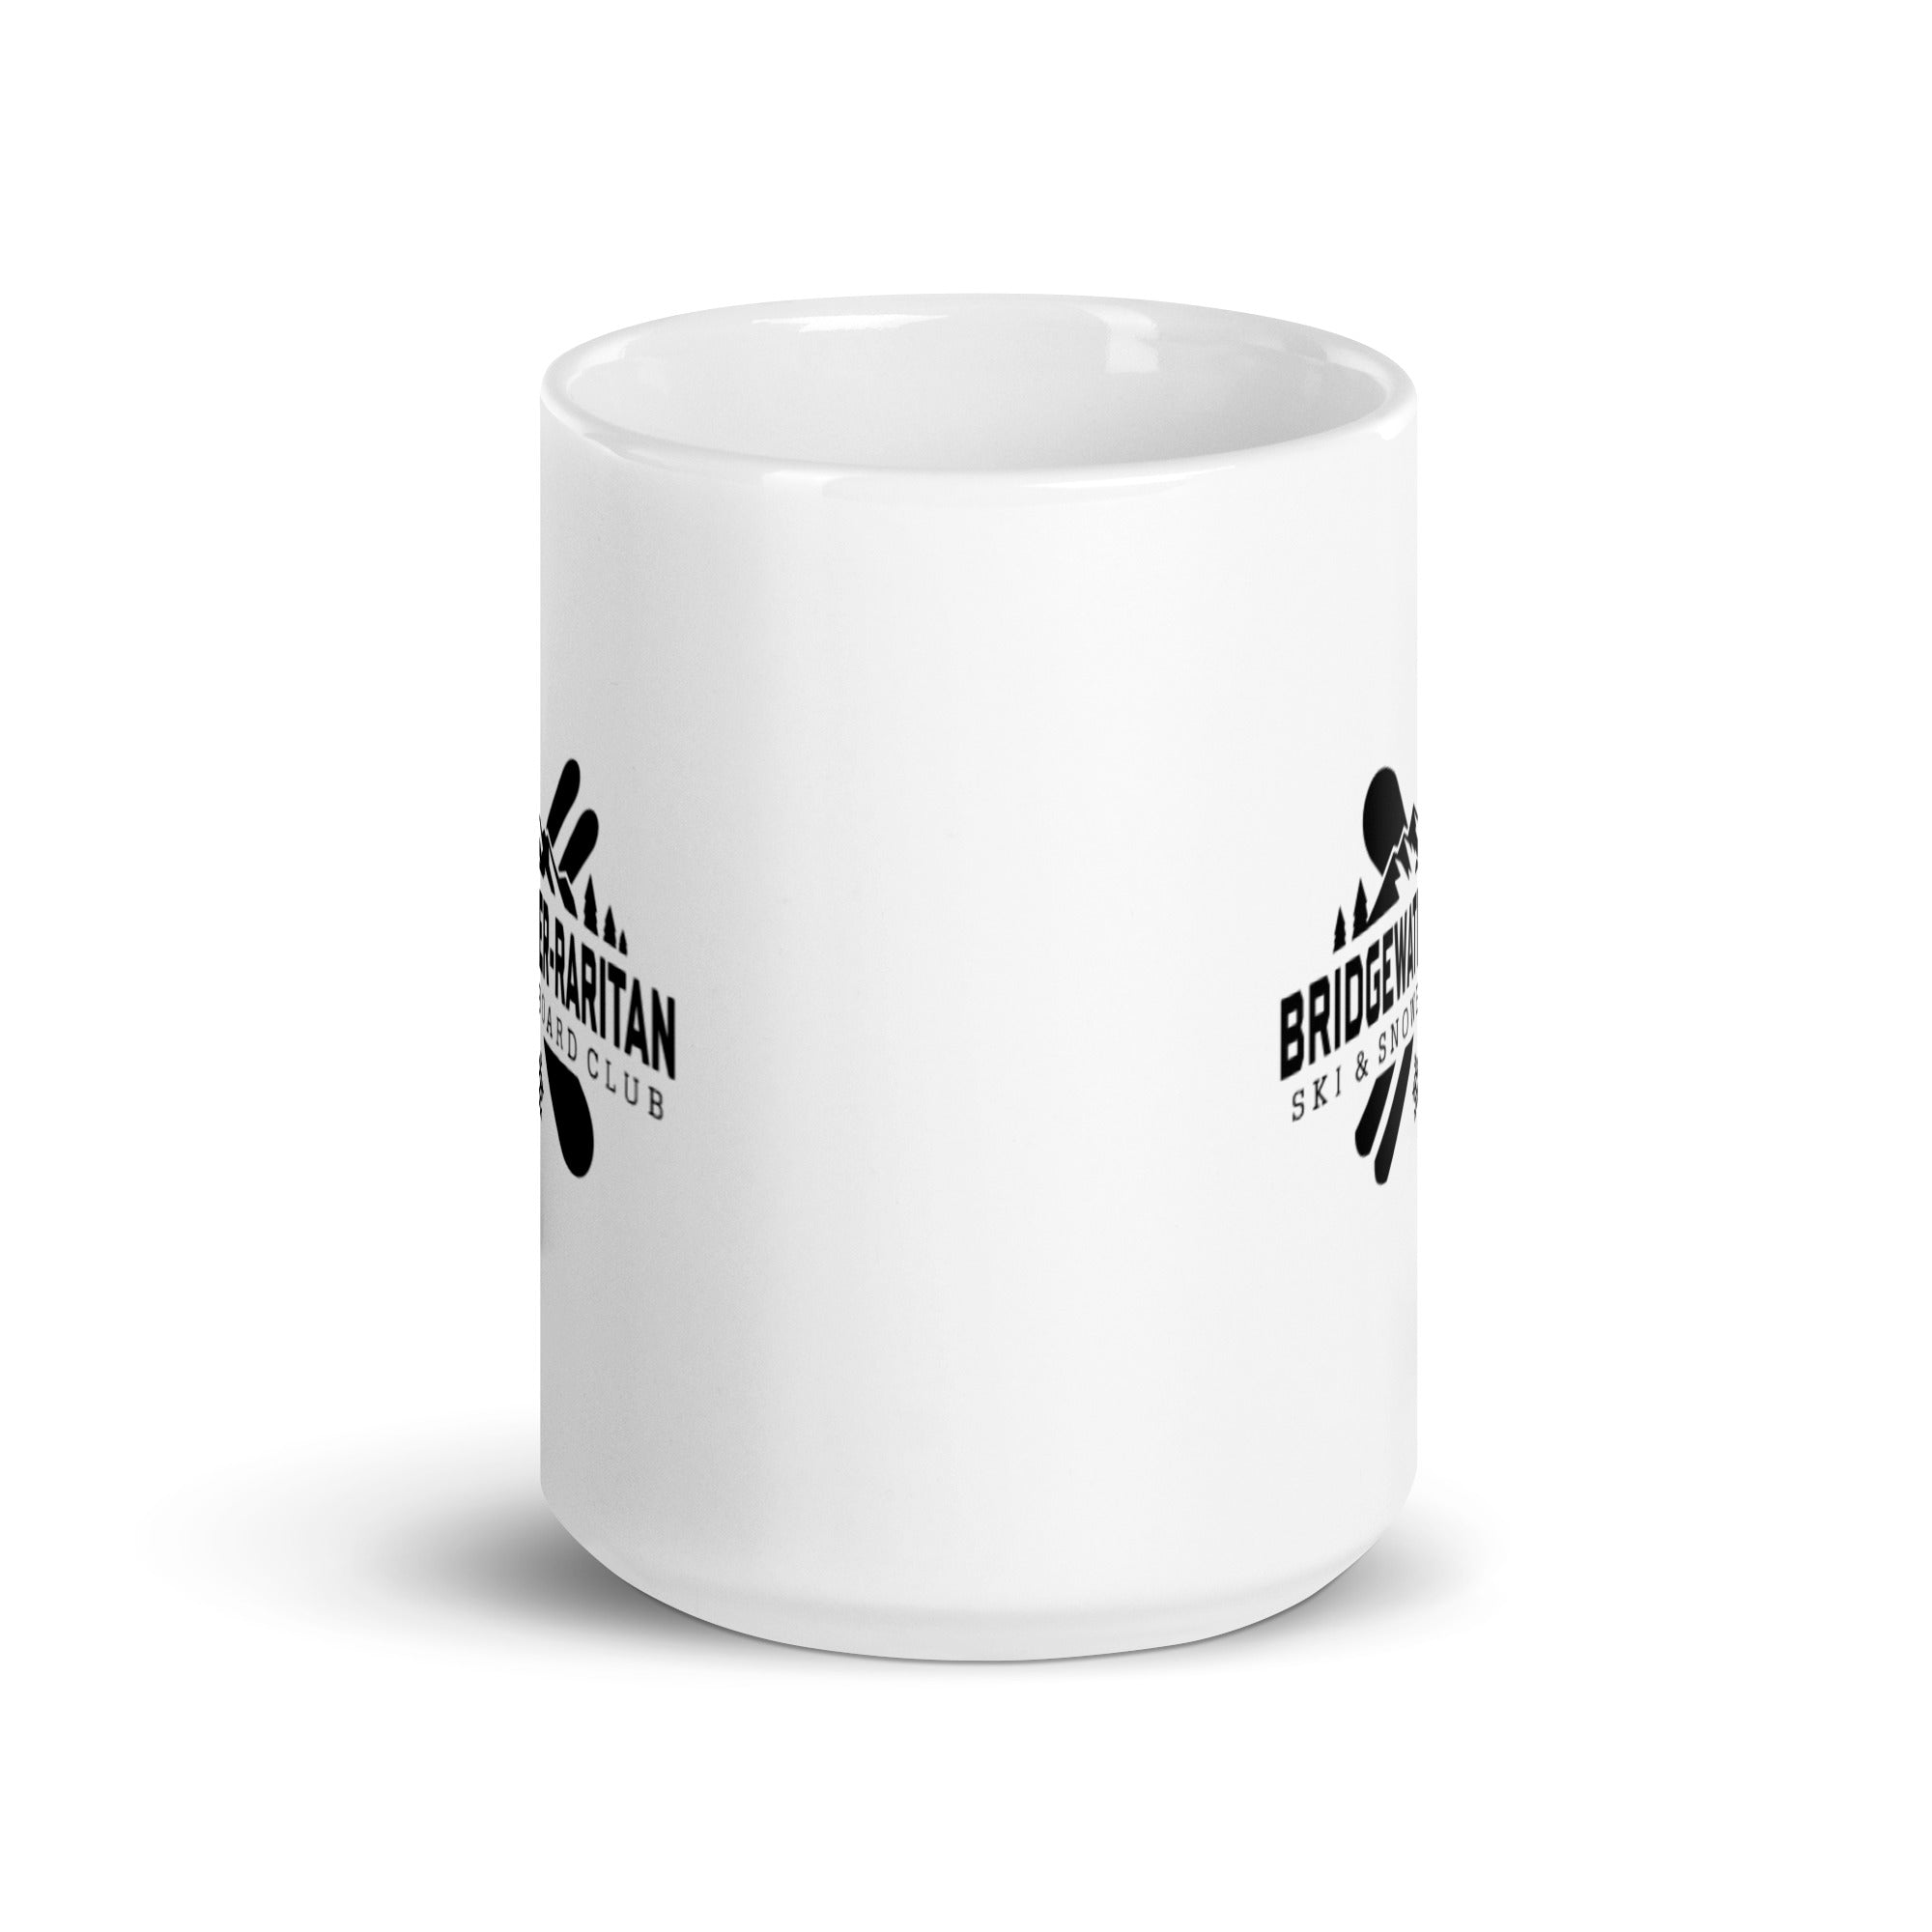 BRSC White glossy mug